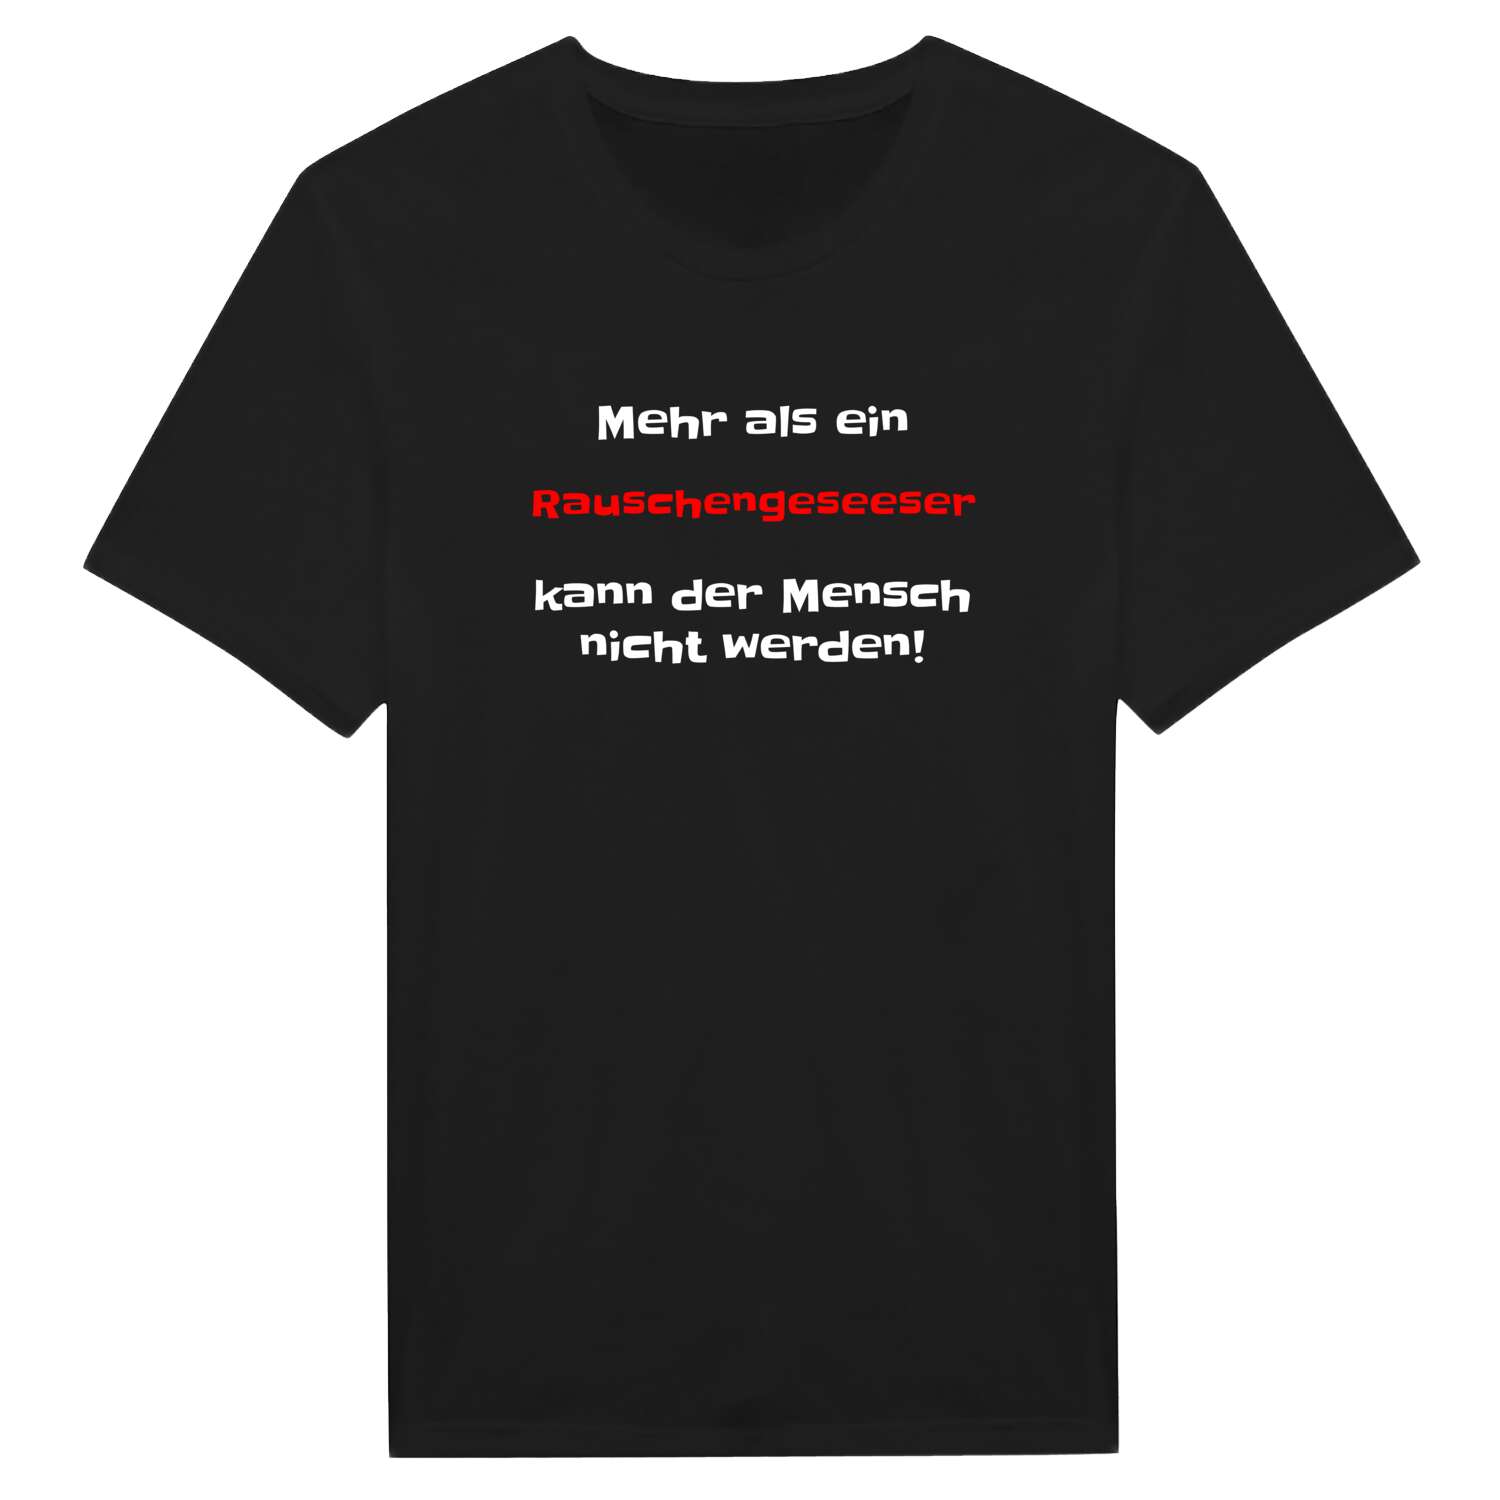 Rauschengesees T-Shirt »Mehr als ein«